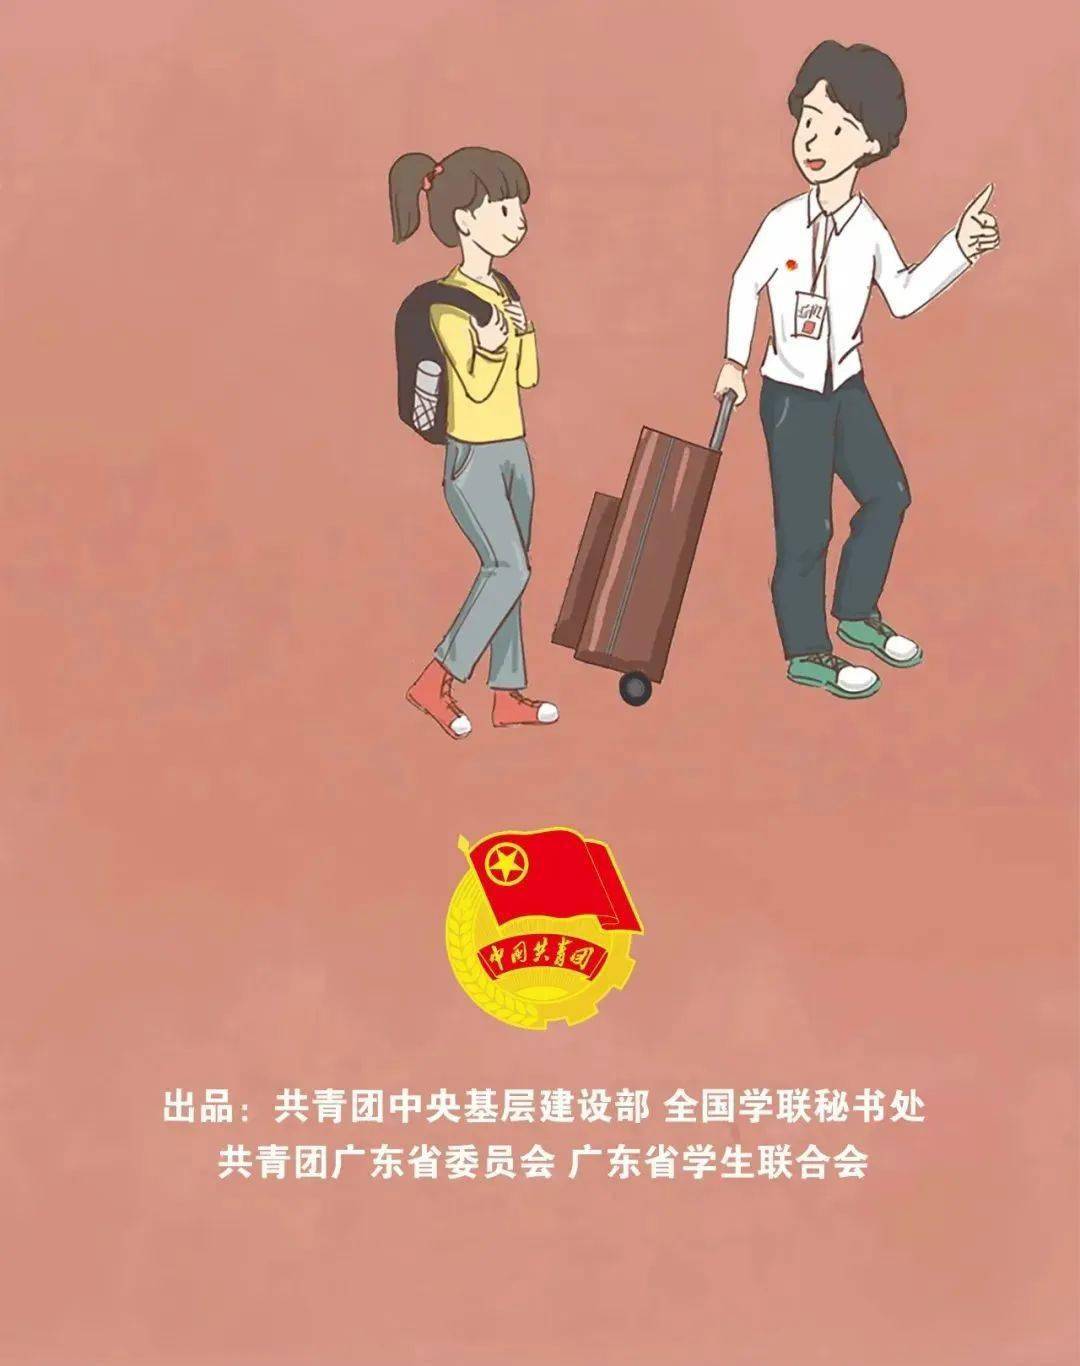 北京：近期连续多所学校检出阳性感染者，说明首都高校是当前疫情防控的重要部位